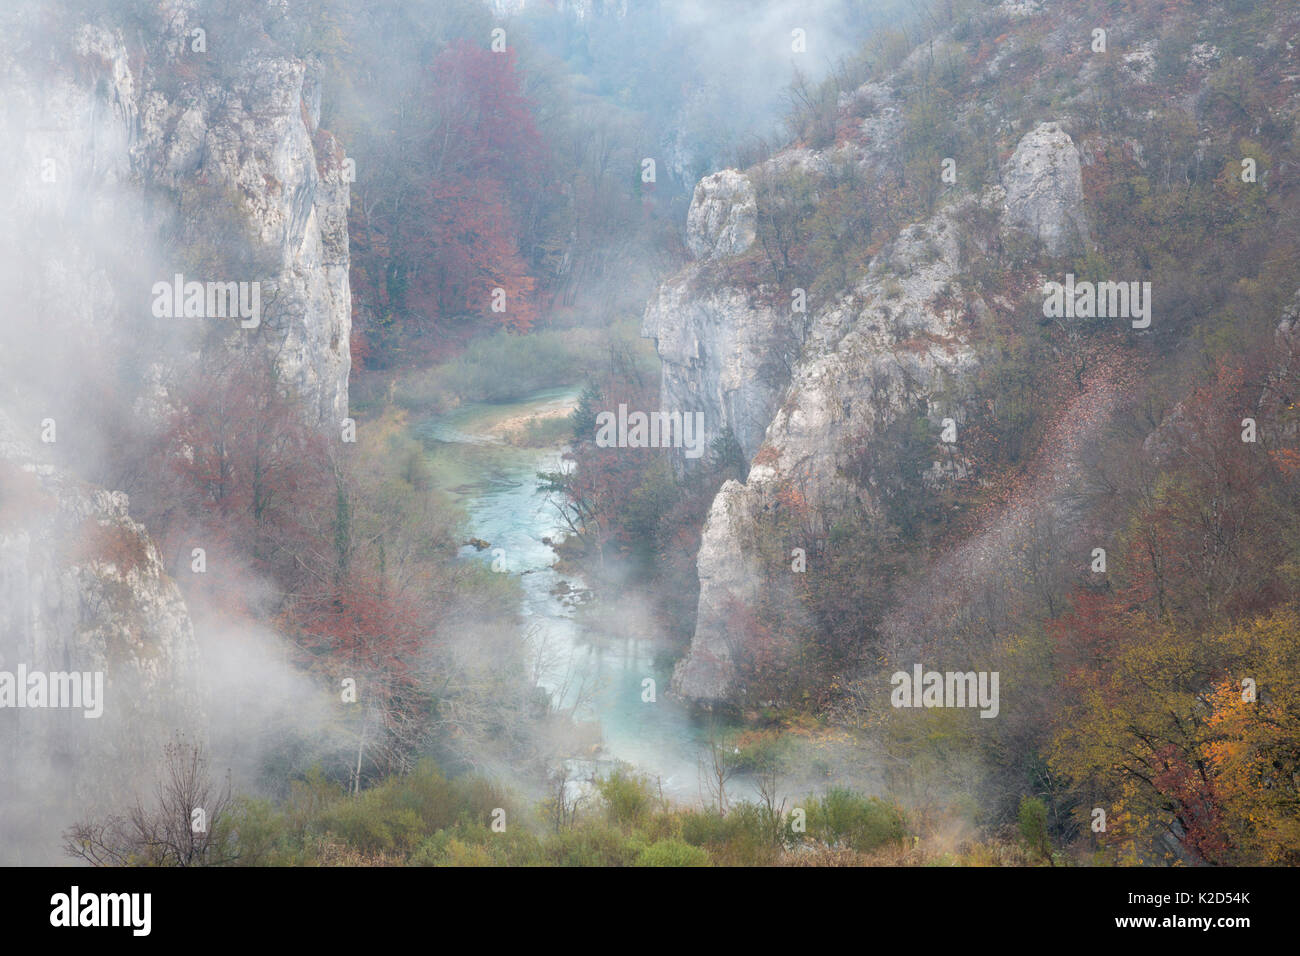 Gorge calcaire Misty, le parc national des Lacs de Plitvice, Croatie. Novembre. Banque D'Images